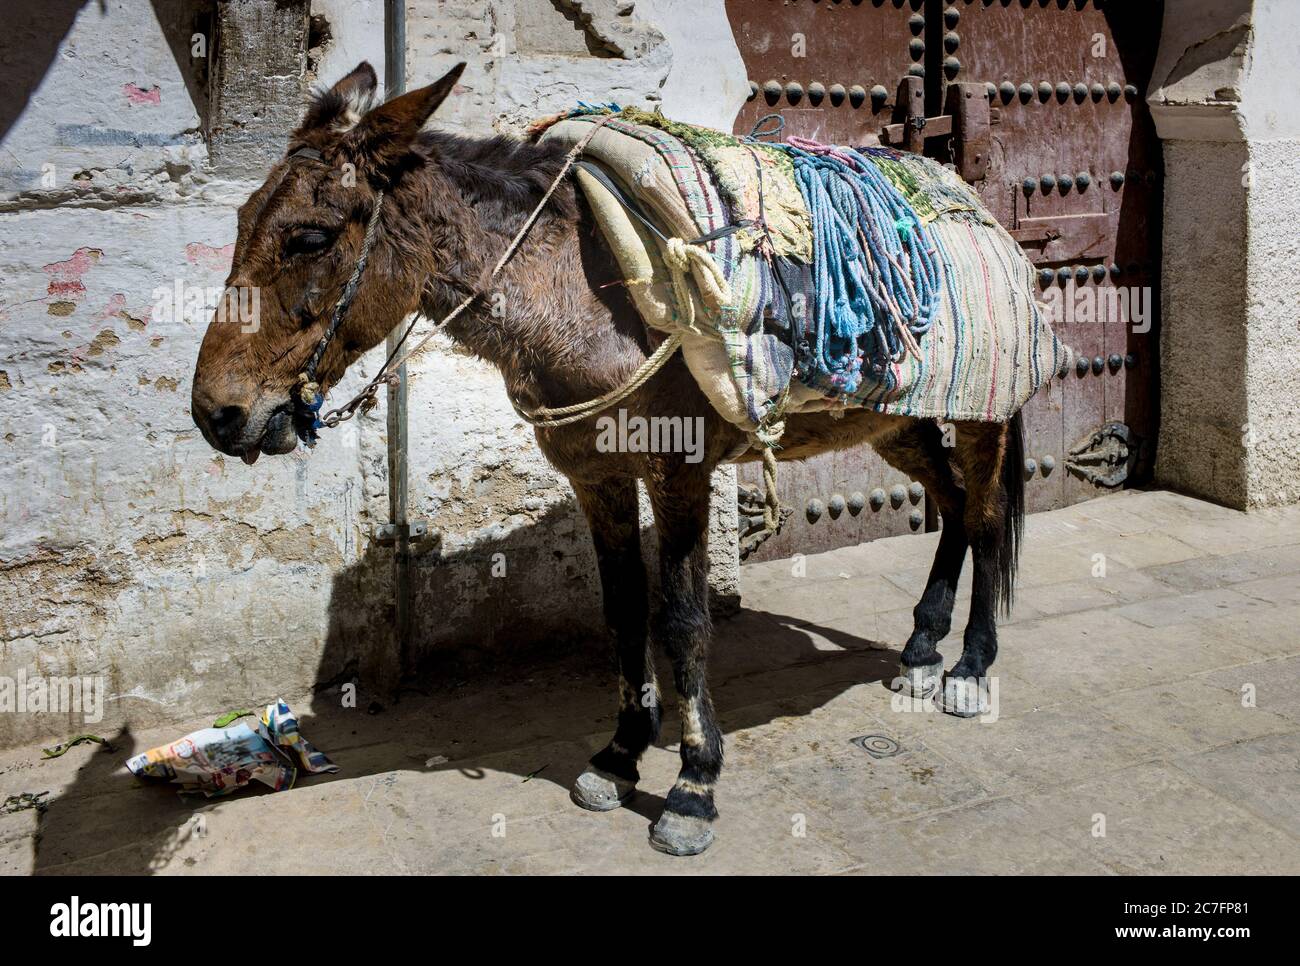 Einsam, erbärmlich und schlecht gepflegt Esel oder Maultier mit einer dicken farbigen Abdeckung in der brennenden Sonne ohne Wasser in einer Straße in Fez, Marokko stehen Stockfoto